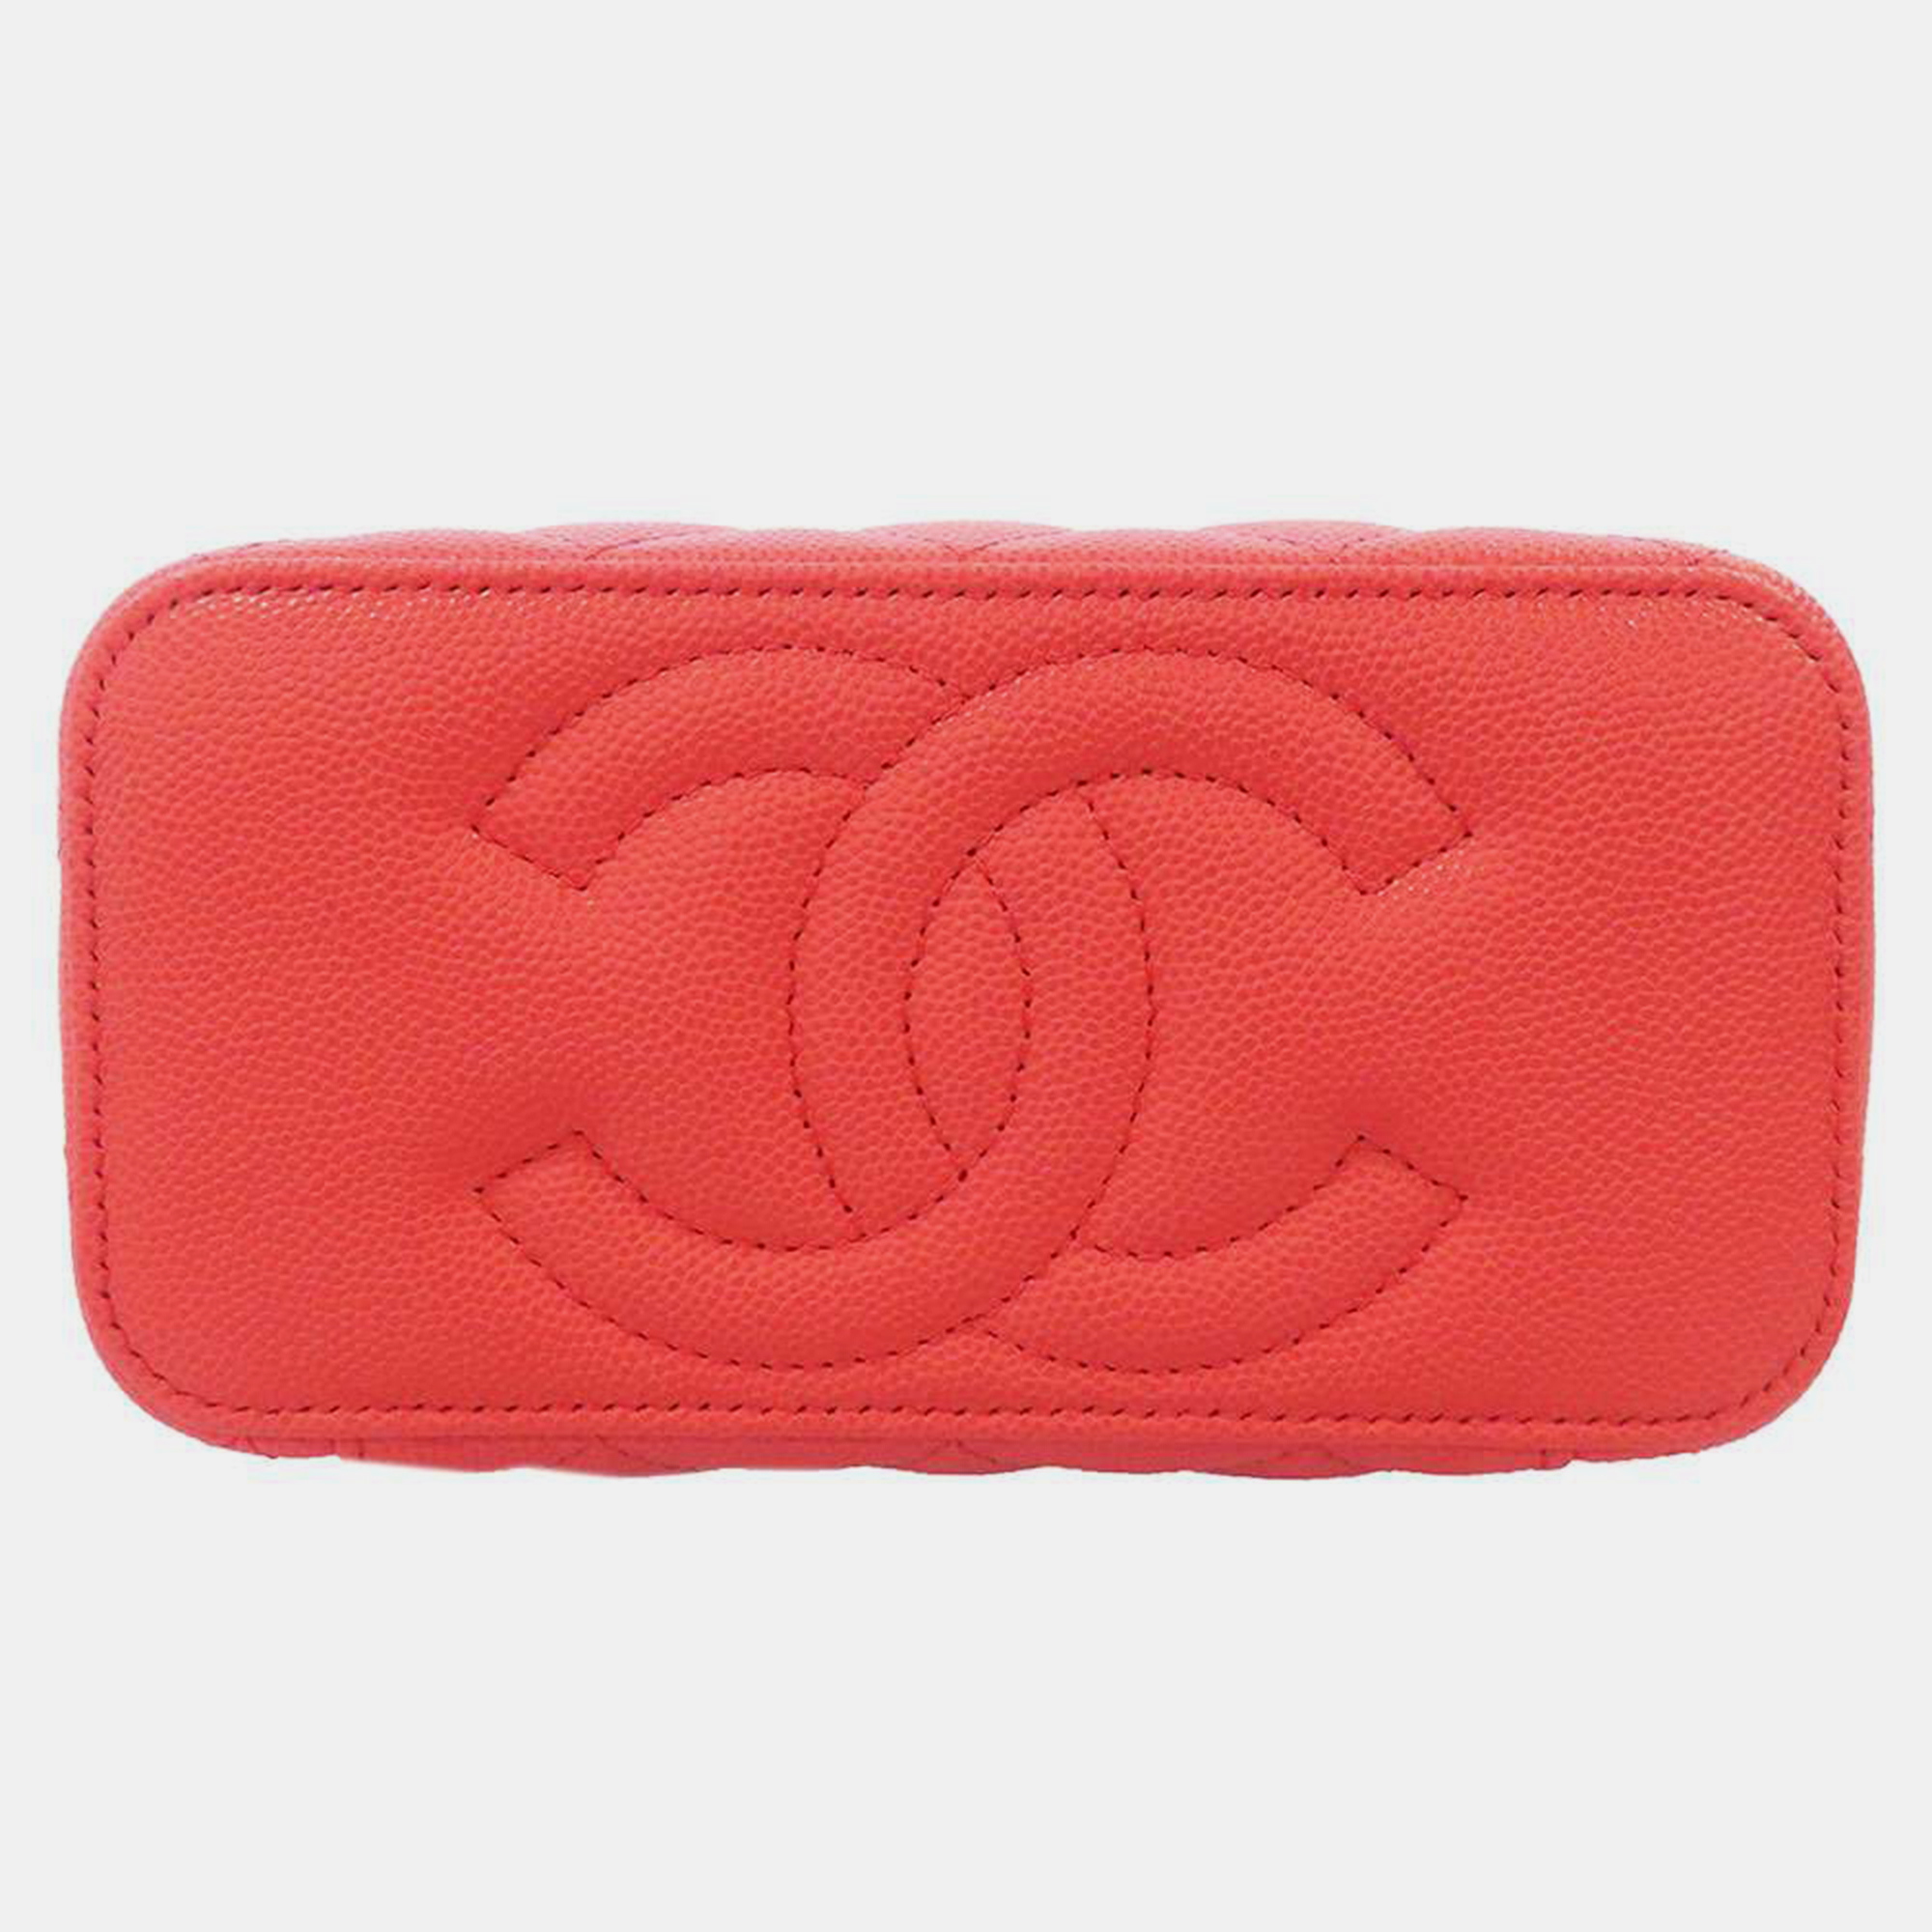 Chanel Red Leather Vanity Case Shoulder Bag